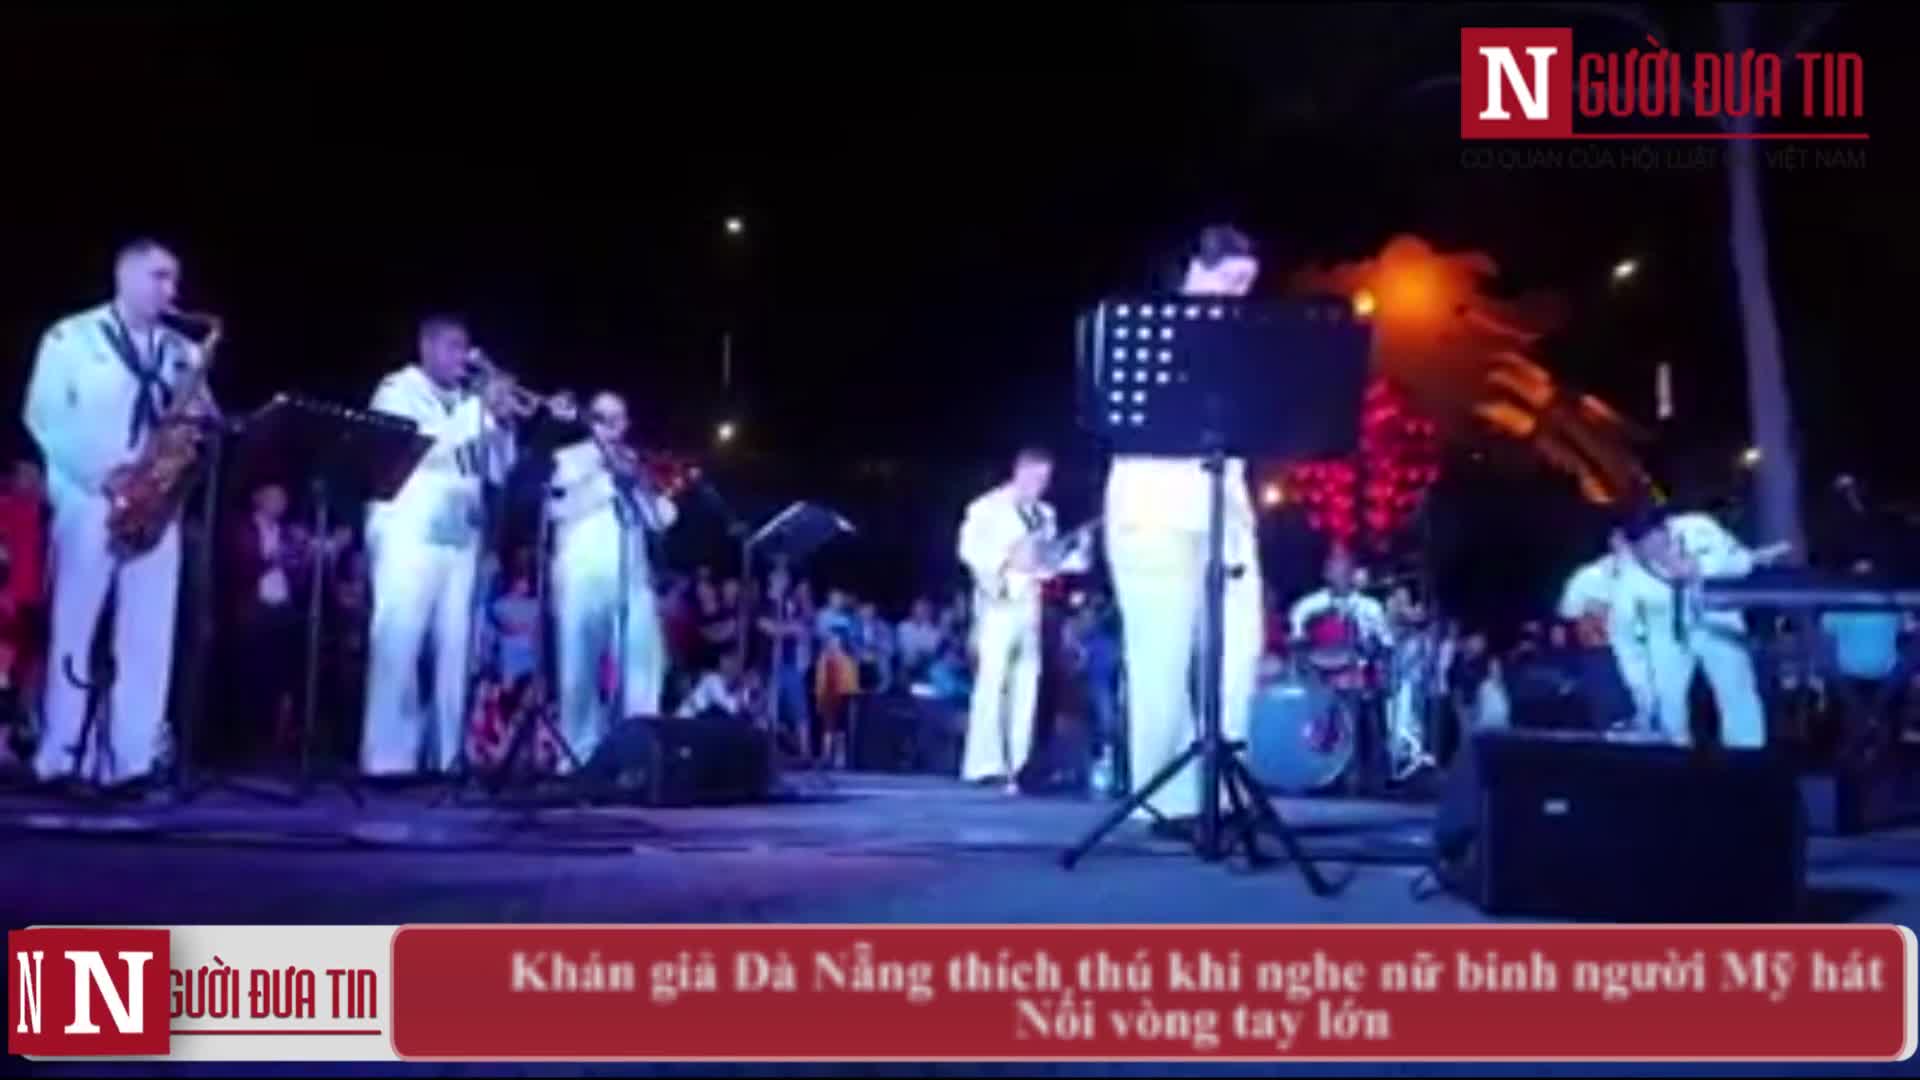 Khán giả Đà Nẵng thích thú khi nghe nữ binh người Mỹ hát Nối vòng tay lớn